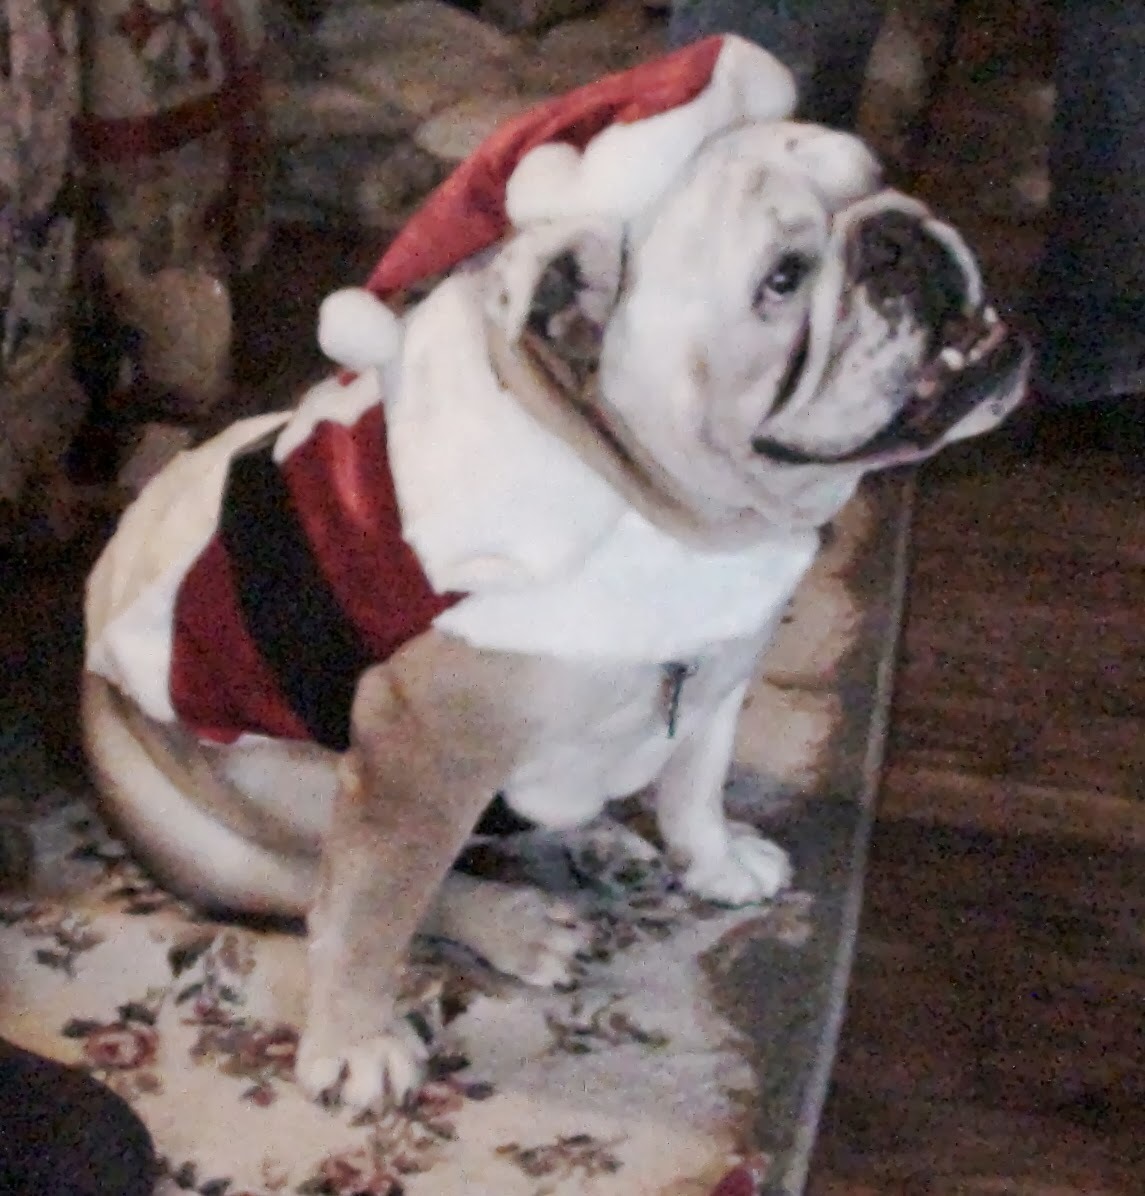 Daisy the Christmas Bulldog